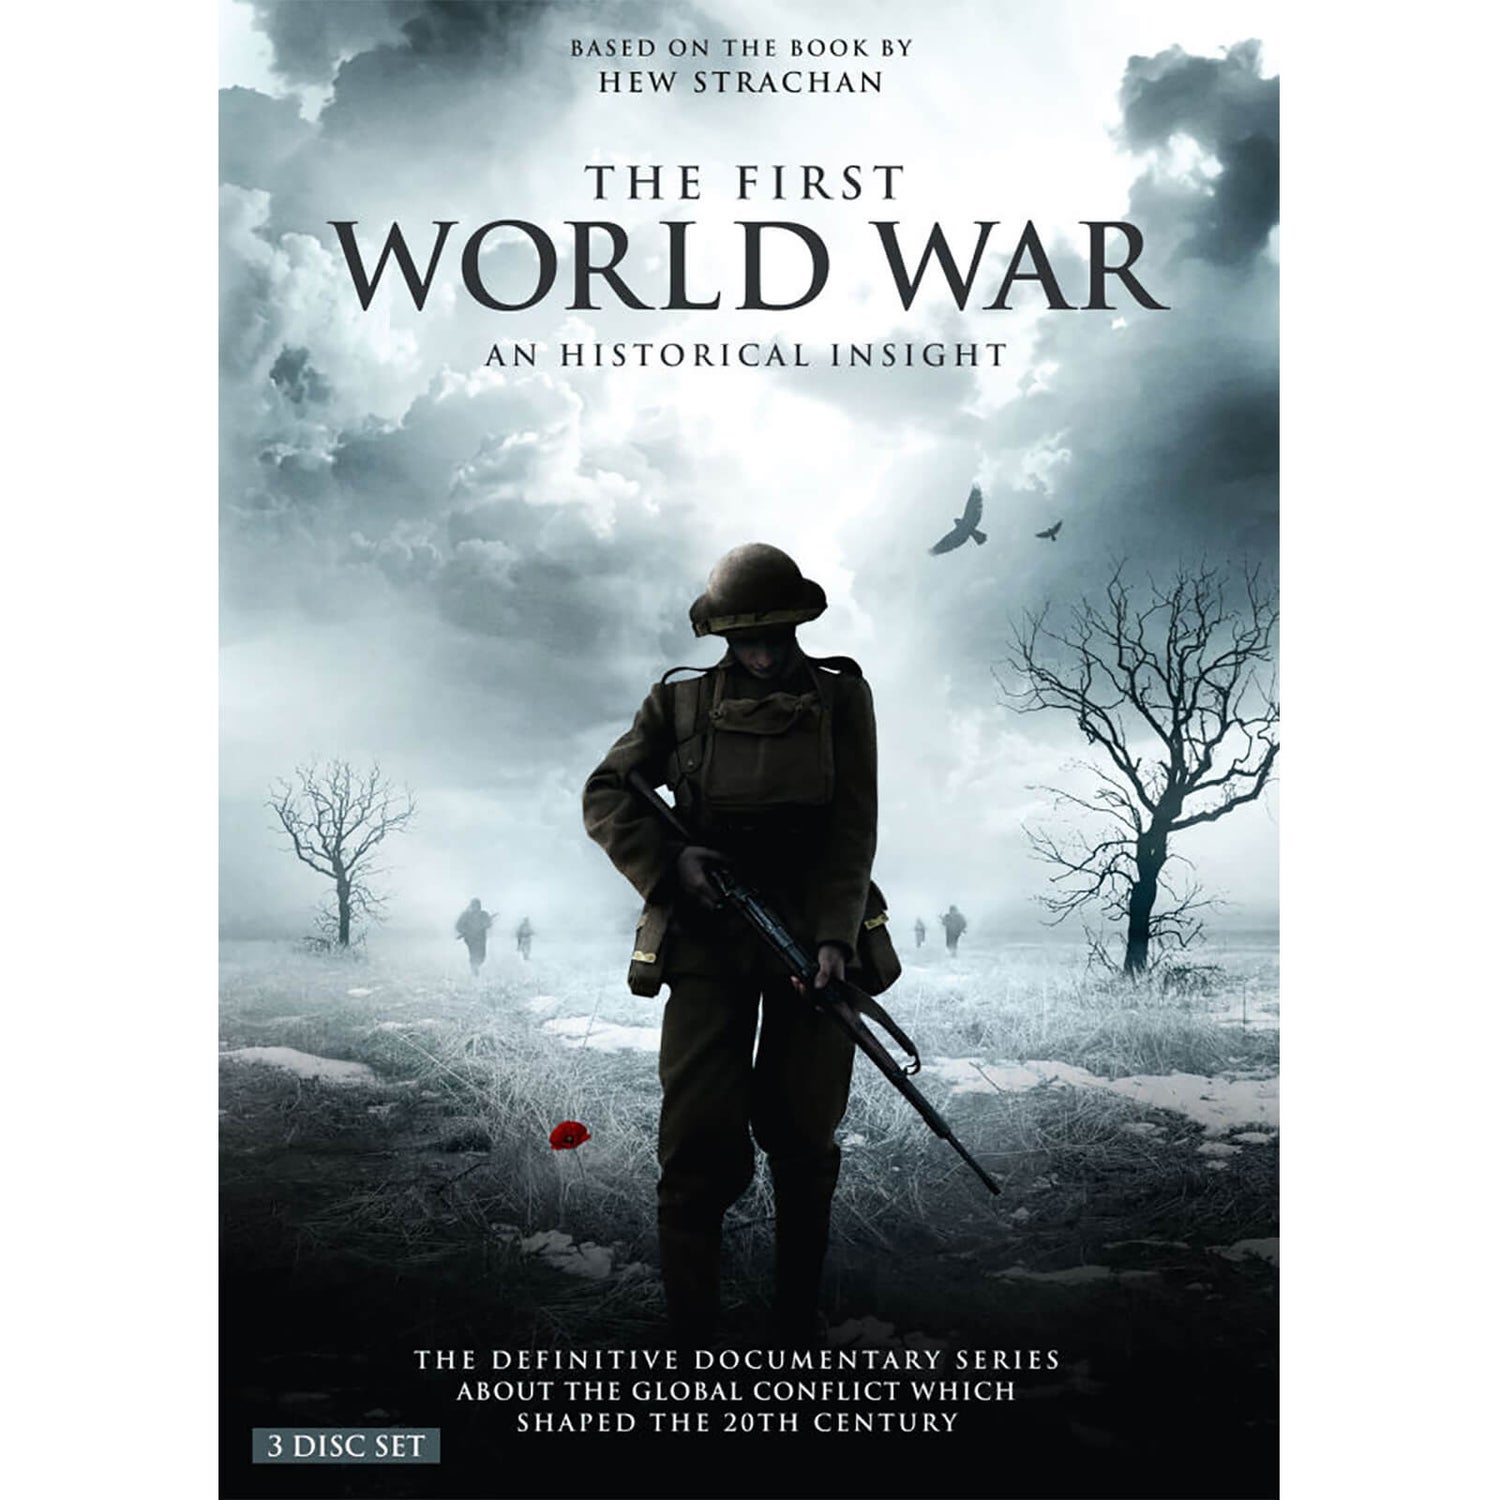 The First World War: An Historical Insight